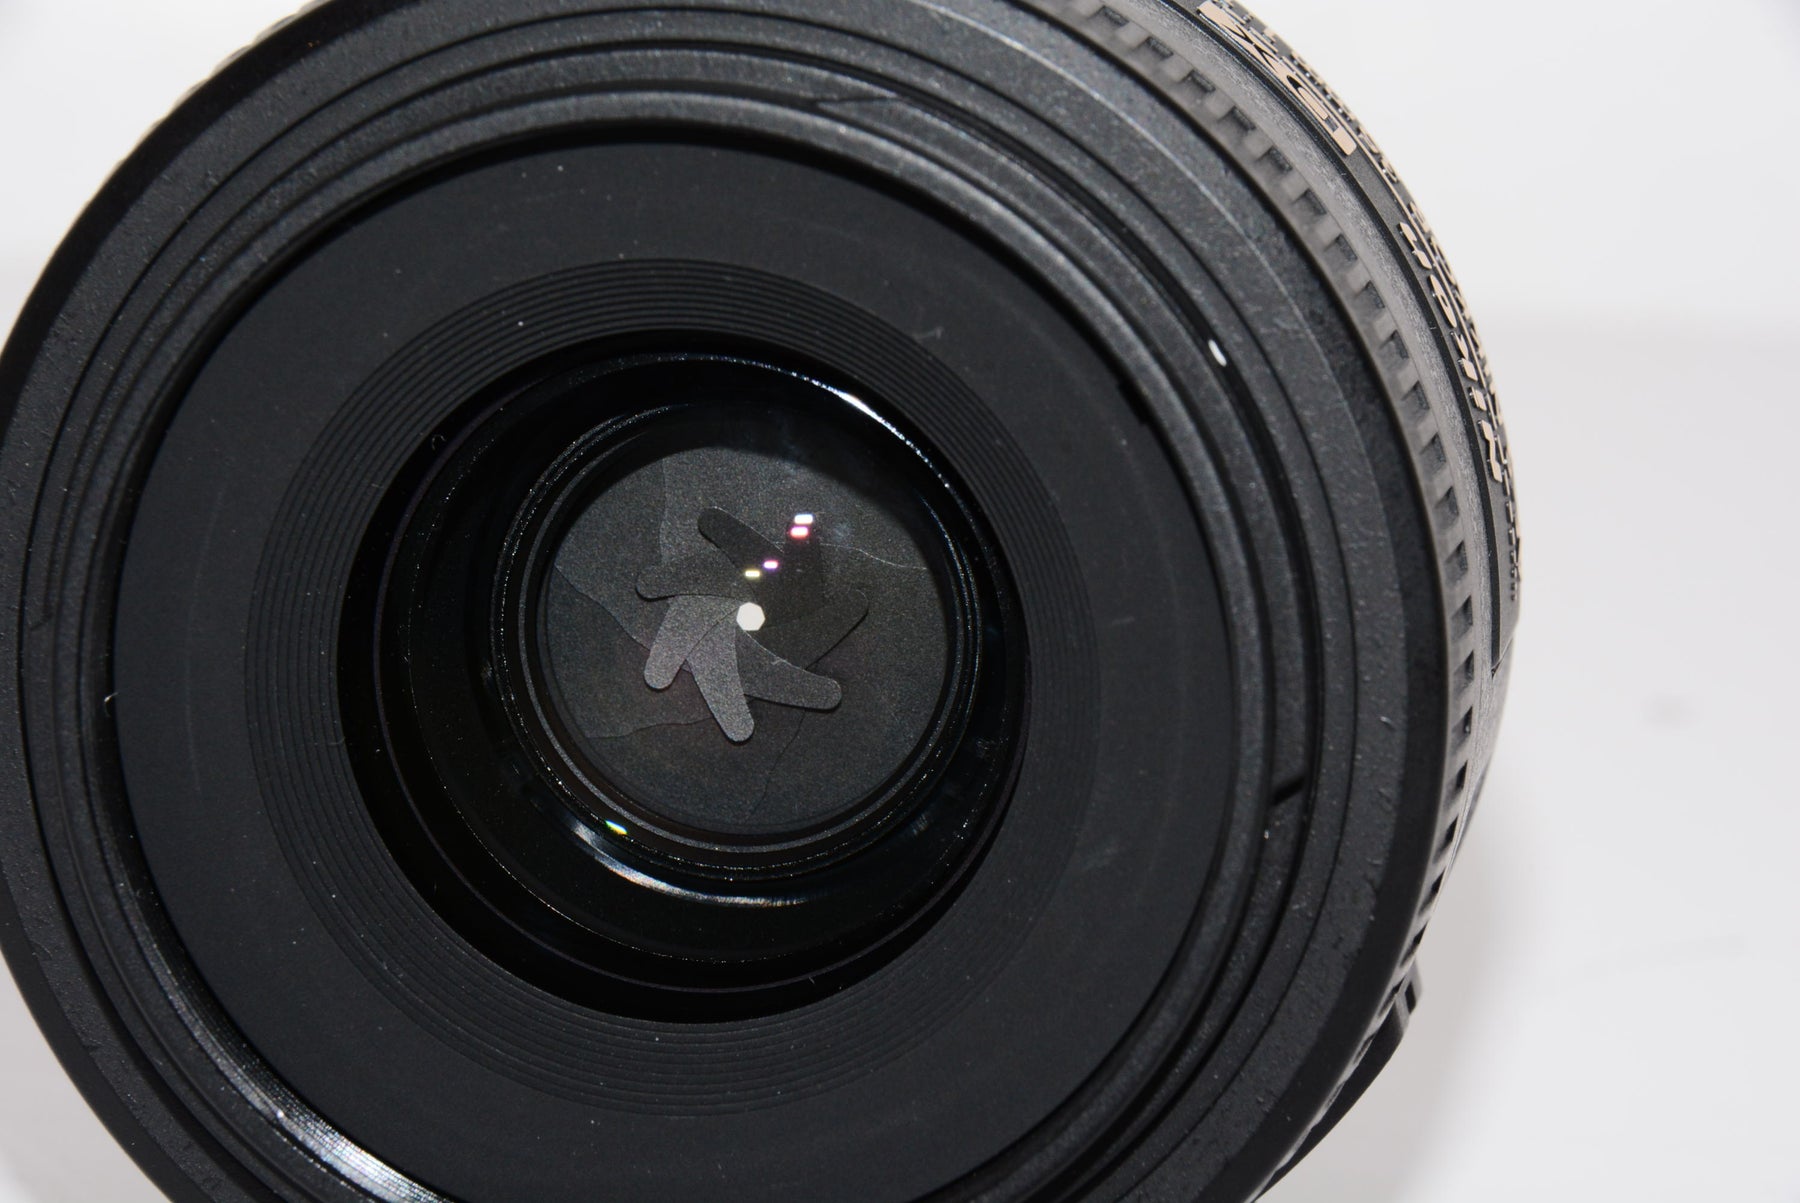 【外観特上級】Nikon 単焦点レンズ AF-S DX NIKKOR 35mm f/1.8G